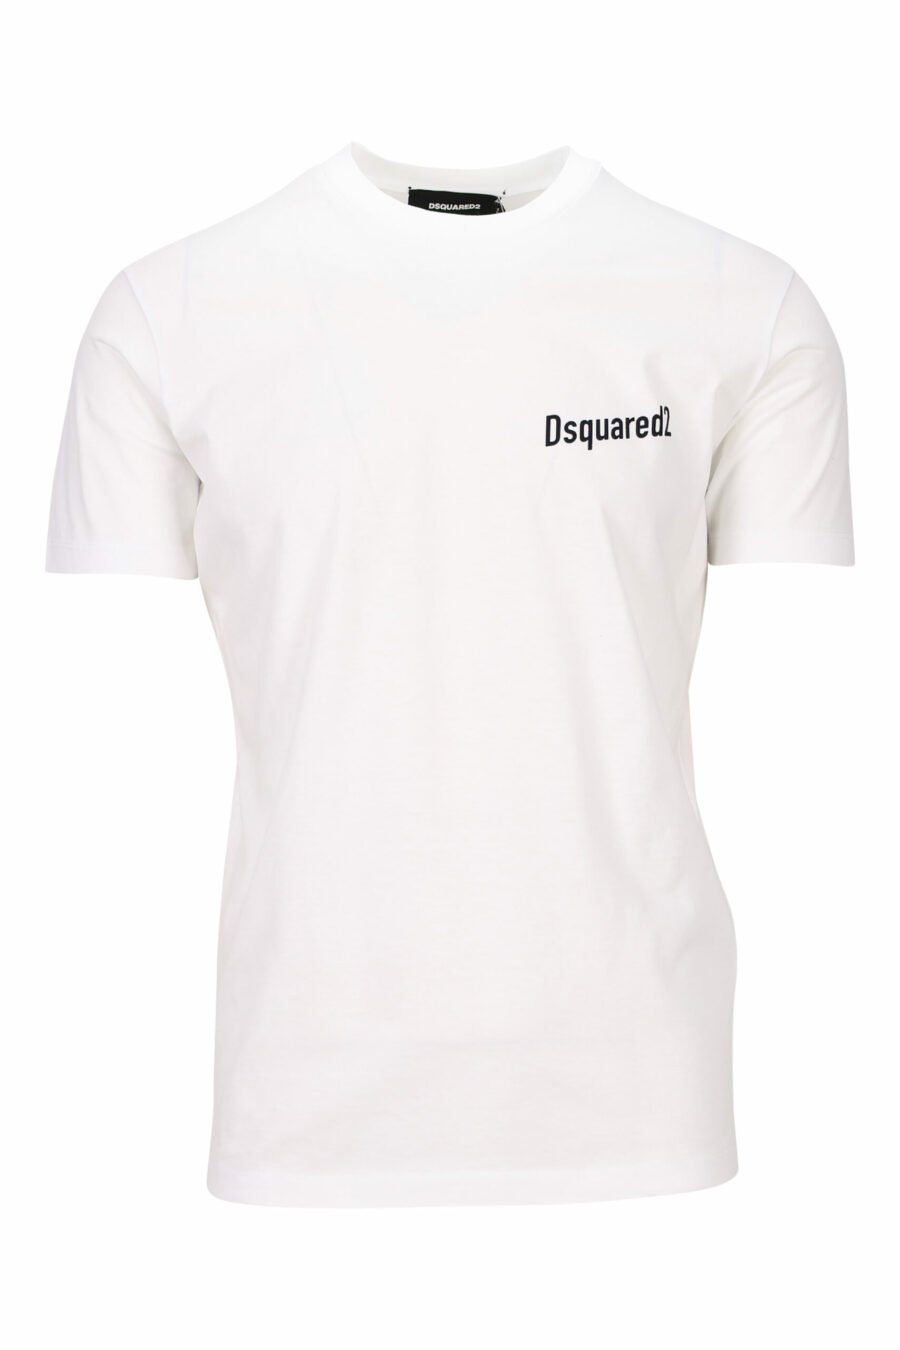 Camiseta blanca con minilogo frontal y estampado "futurist flavor" detras - 8054148264994 scaled